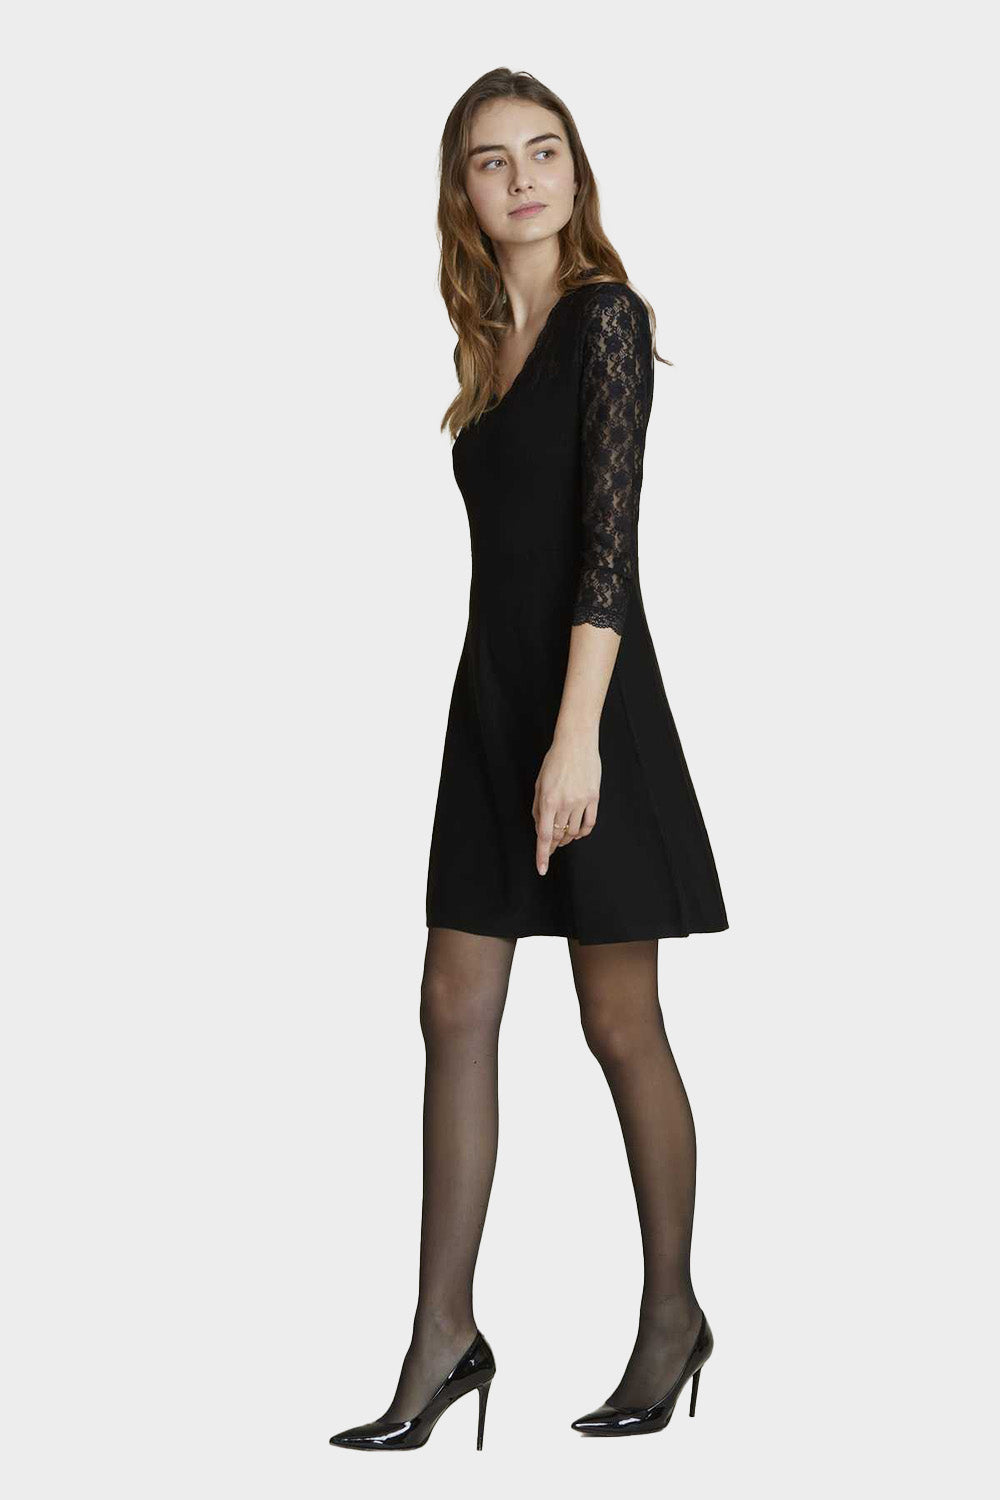 שמלת סריג וי לנשים שרוולי תחרה עדינה RENE DERHY Vendome online | ונדום .